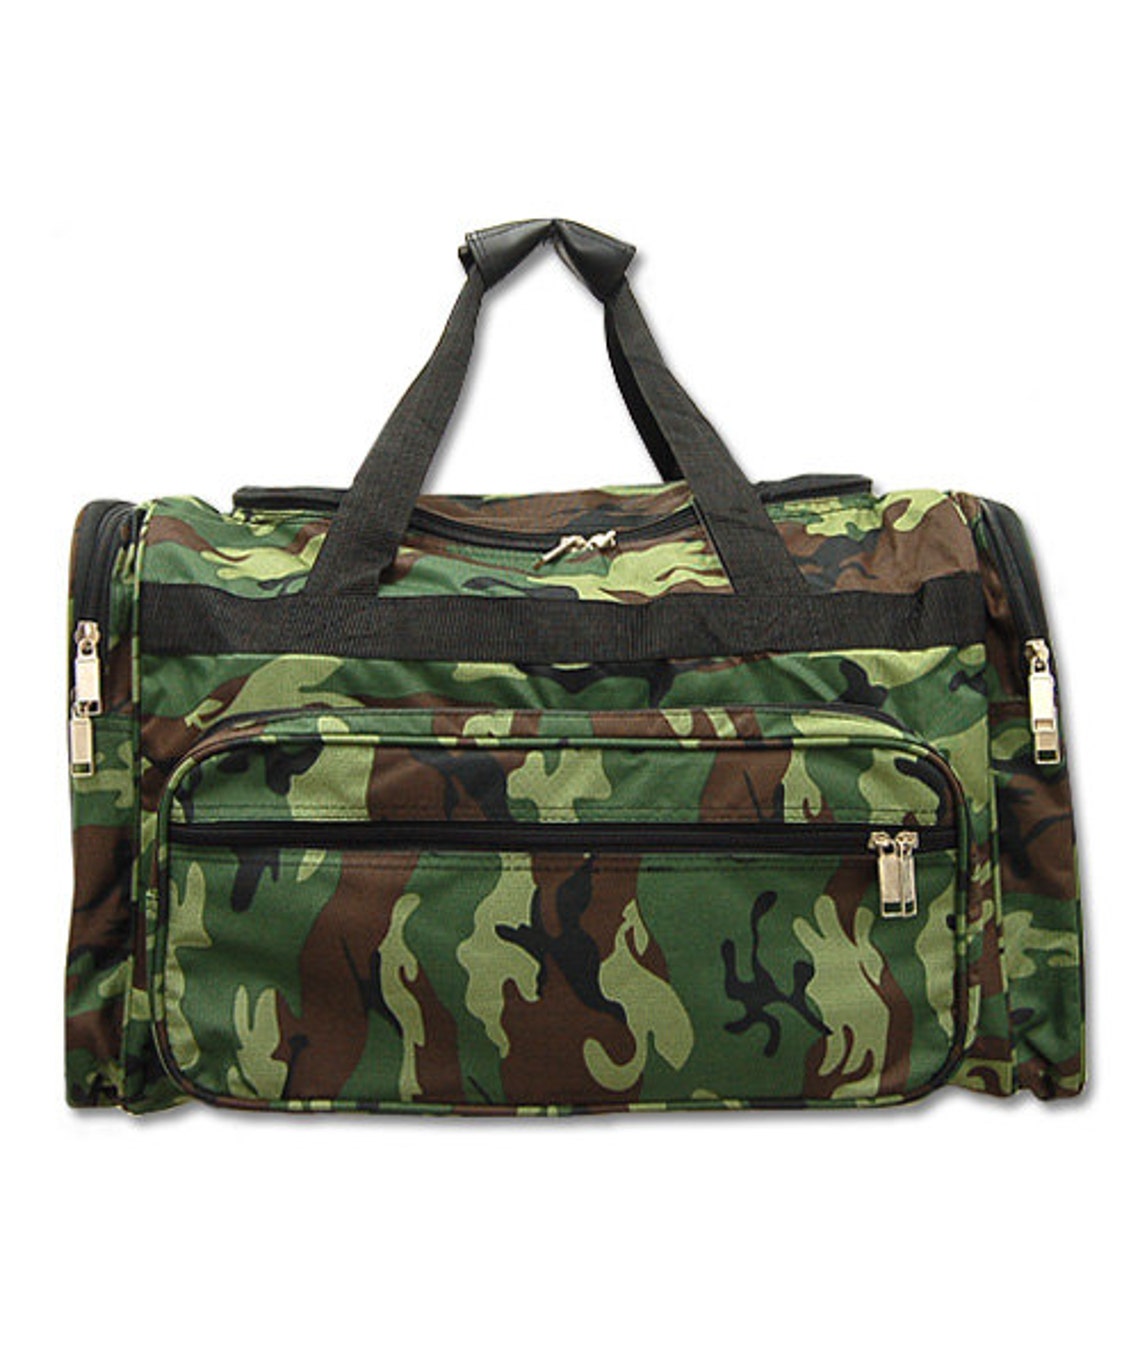 Camouflage DUFFLE Bag Boys Duffle Bag Camouflage Luggage | Etsy